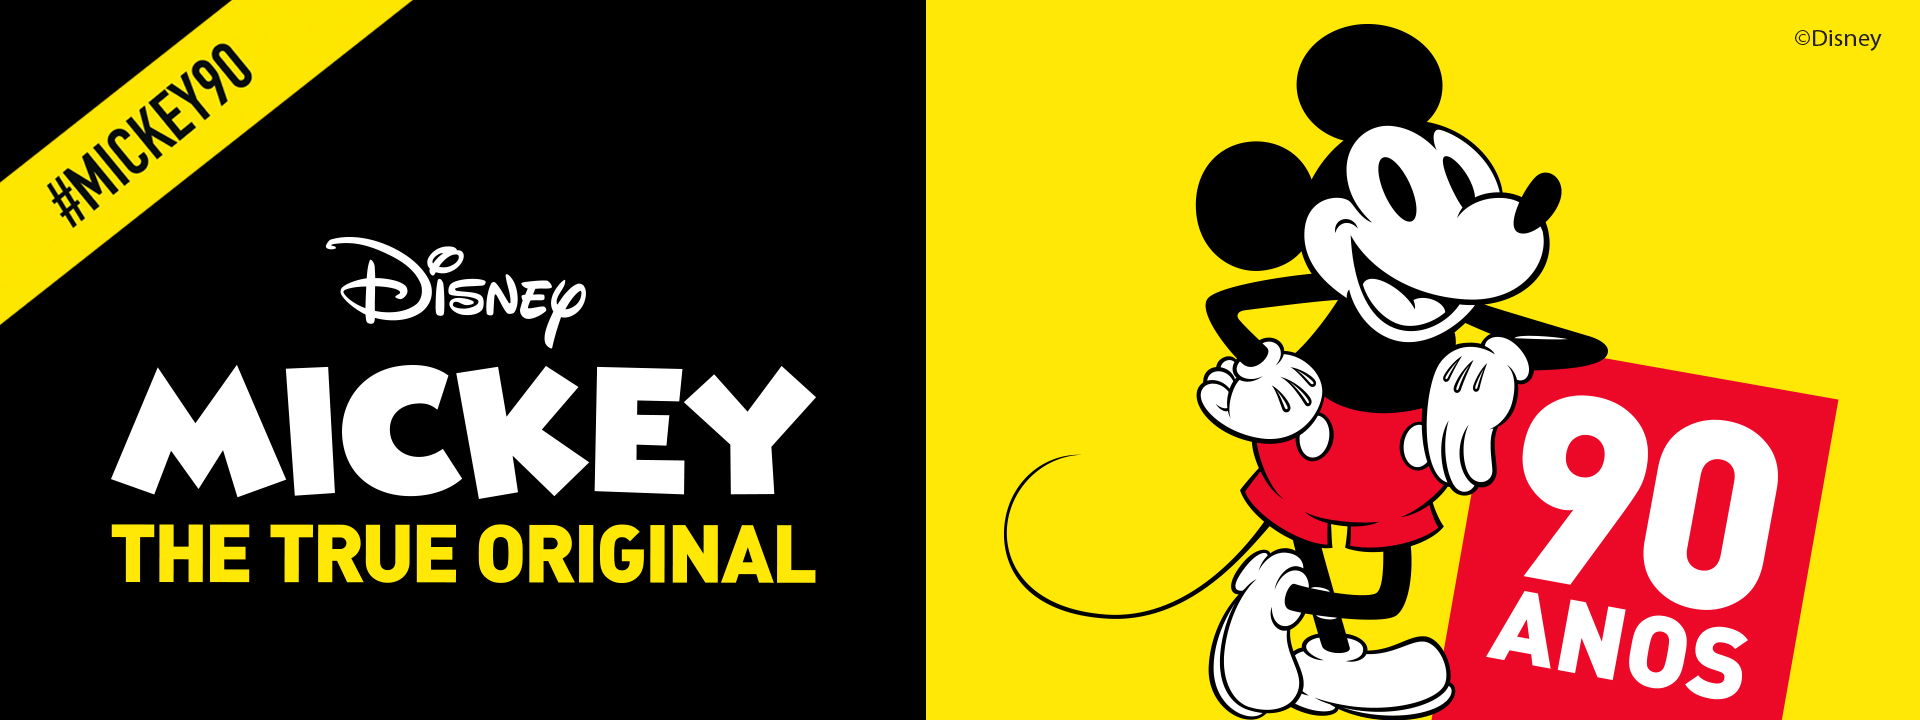 Mickey 90 anos 